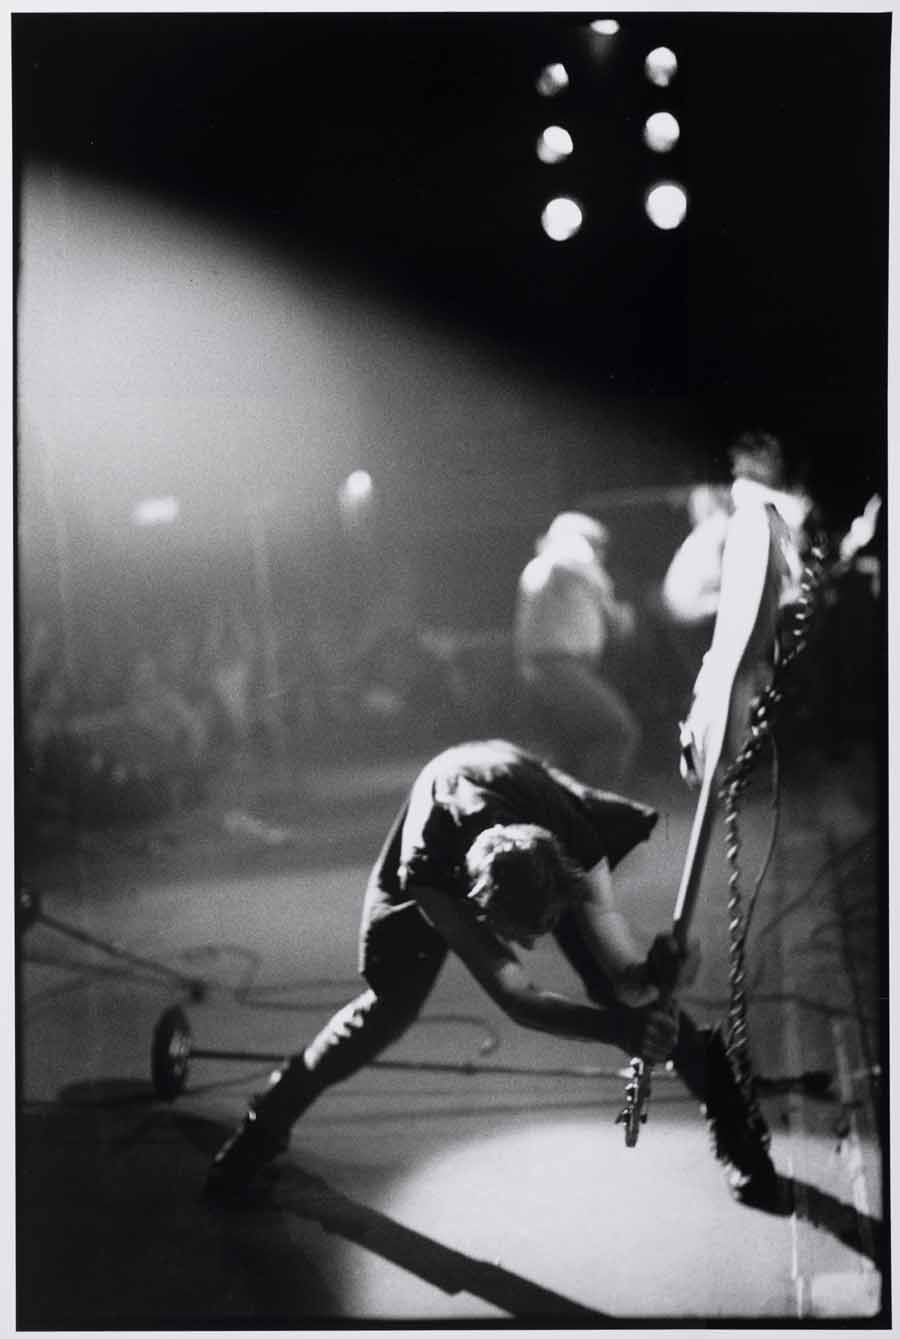 Pennie Smith, The Clash. Le choc, London calling, Noir et blanc